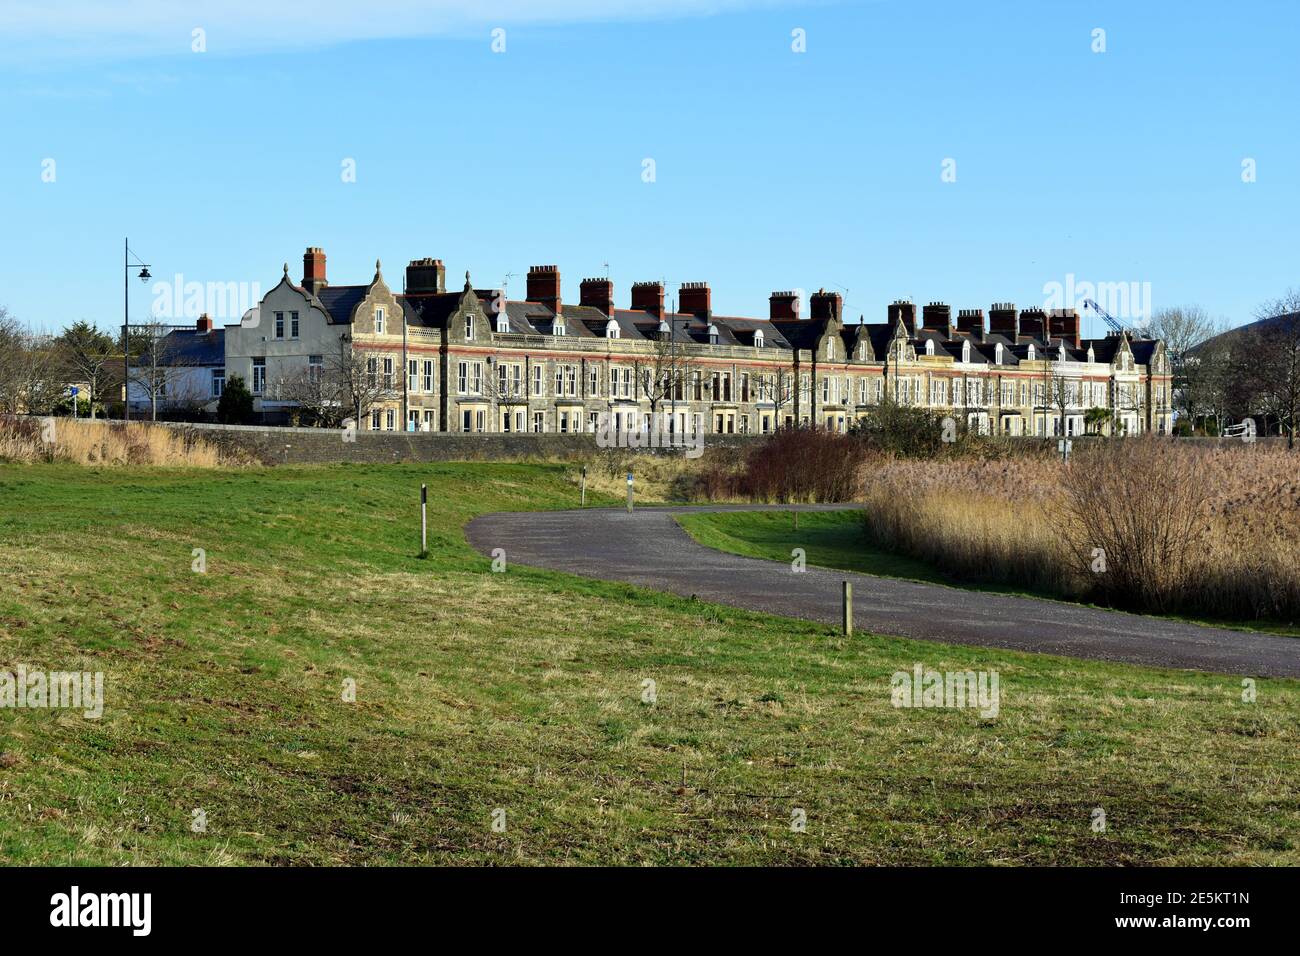 Rangée de maisons sur l'Esplanade de Windsor et la réserve de terres humides de la baie de Cardiff, baie de Cardiff, Cardiff, pays de Galles Banque D'Images